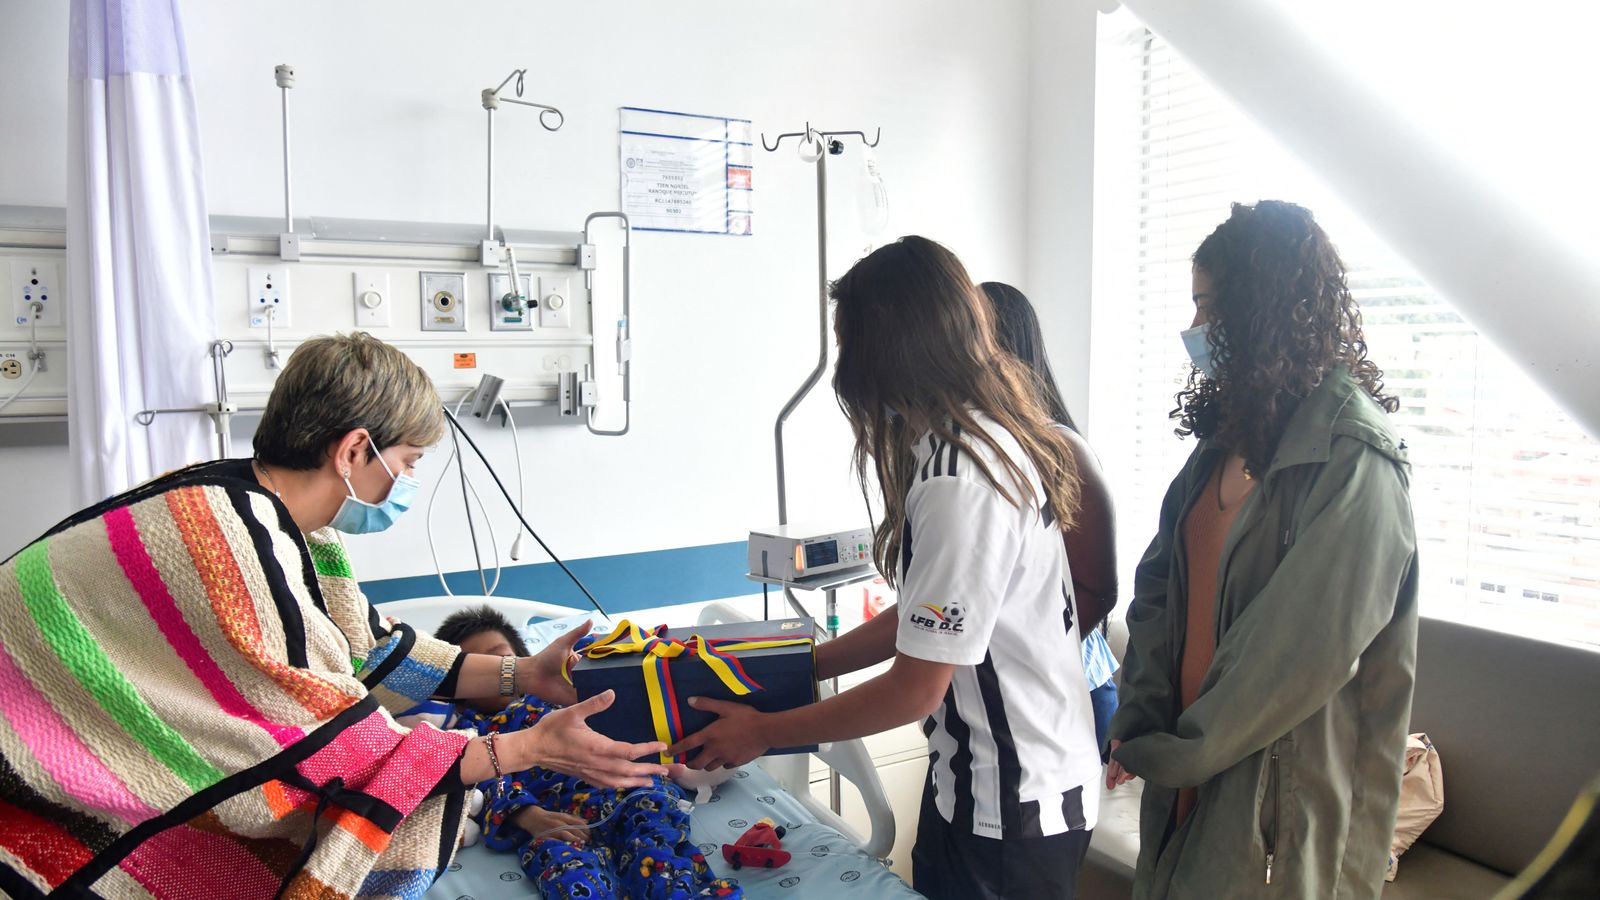 Colombie. La mère des enfants secourus “a survécu pendant quatre jours” après un accident d’avion dans la jungle |  Nouvelles du monde